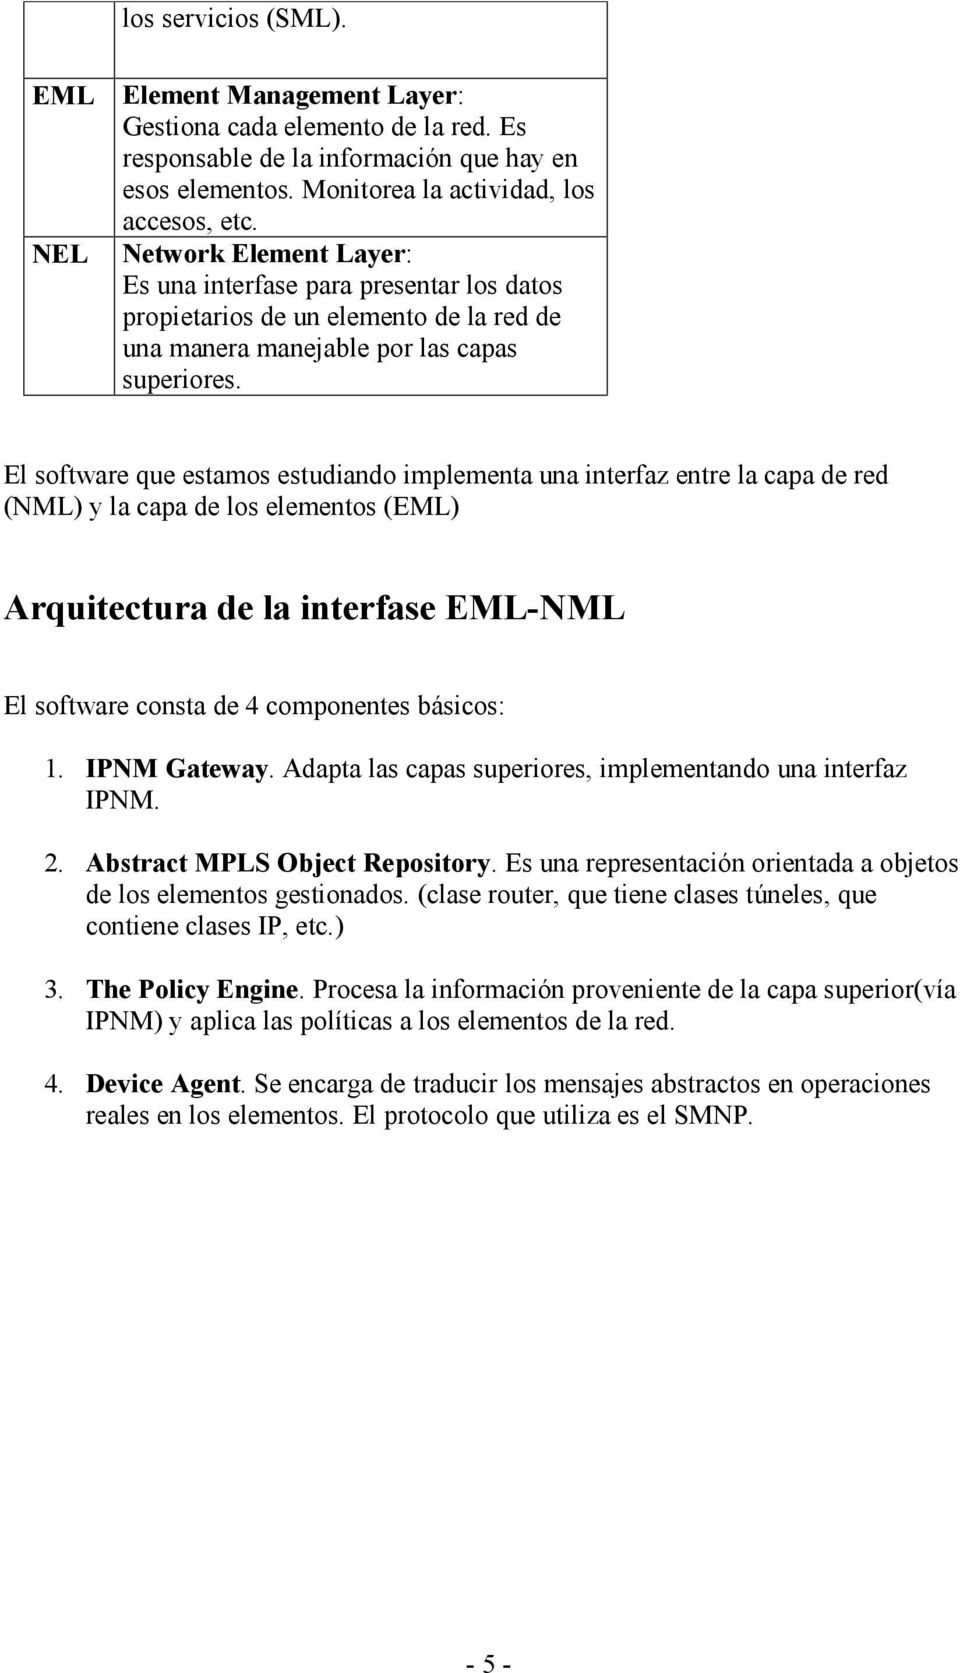 El software que estamos estudiando implementa una interfaz entre la capa de red (NML) y la capa de los elementos (EML) Arquitectura de la interfase EML-NML El software consta de 4 componentes